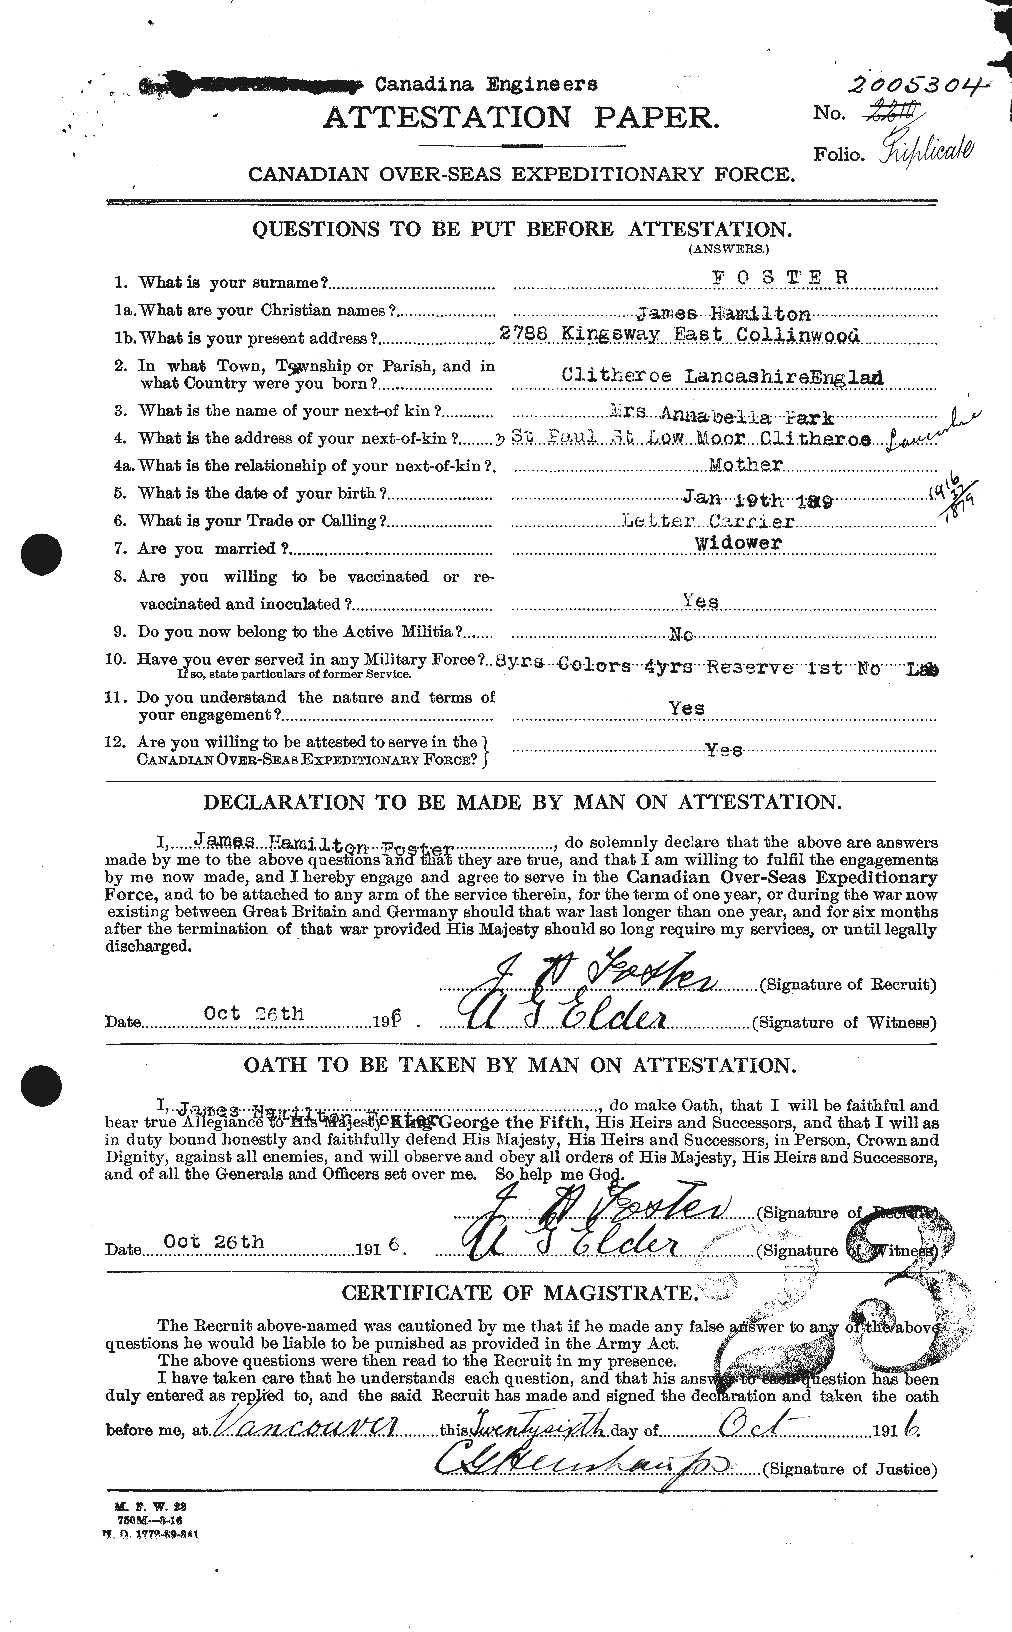 Dossiers du Personnel de la Première Guerre mondiale - CEC 333306a